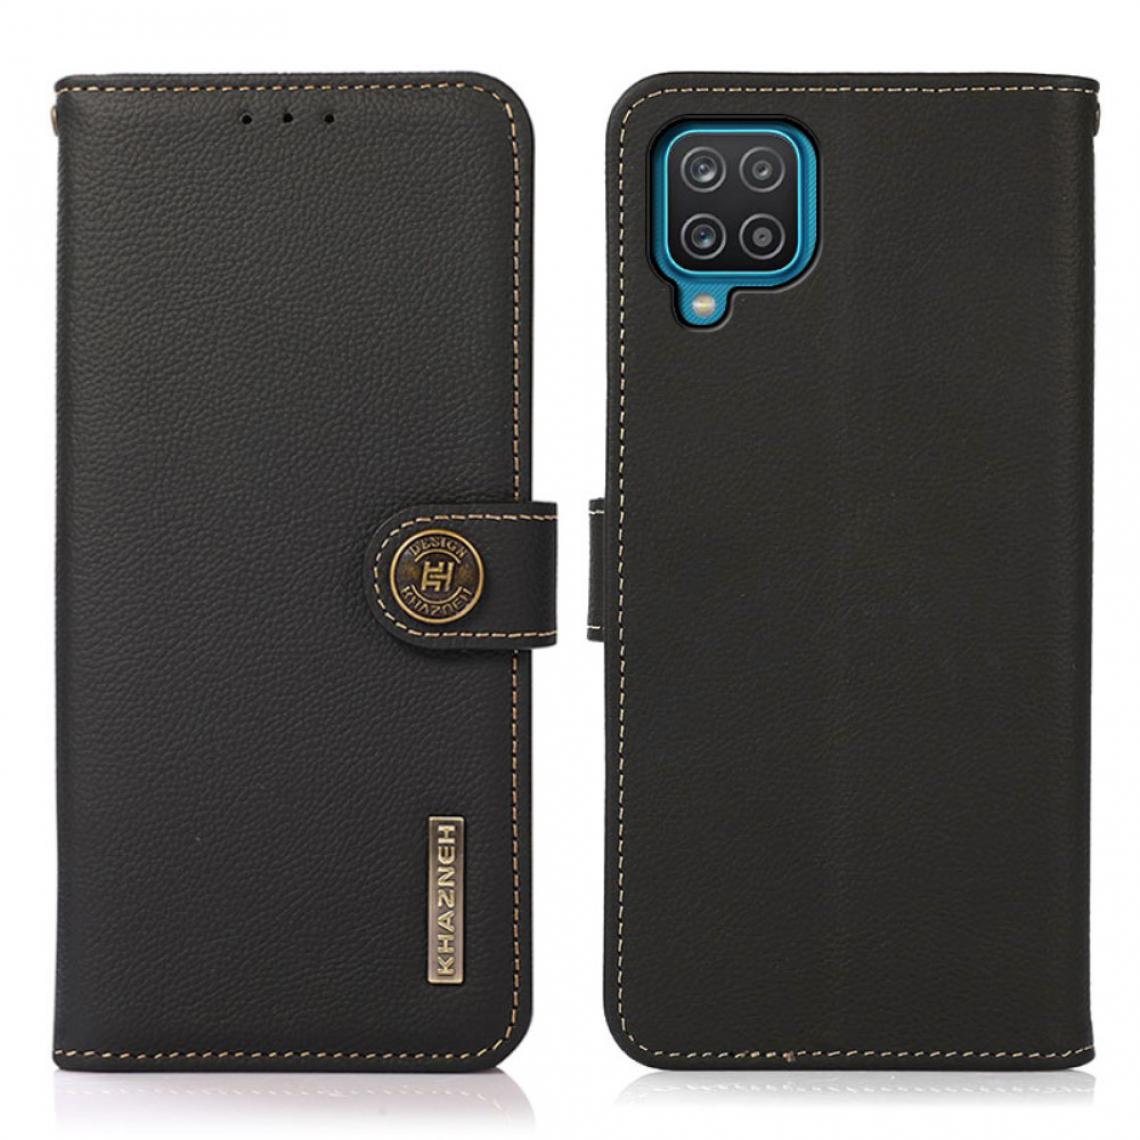 Other - Etui en PU Revêtement texturé avec fonction de balayage antivol RFID noir pour votre Samsung Galaxy A12 - Coque, étui smartphone